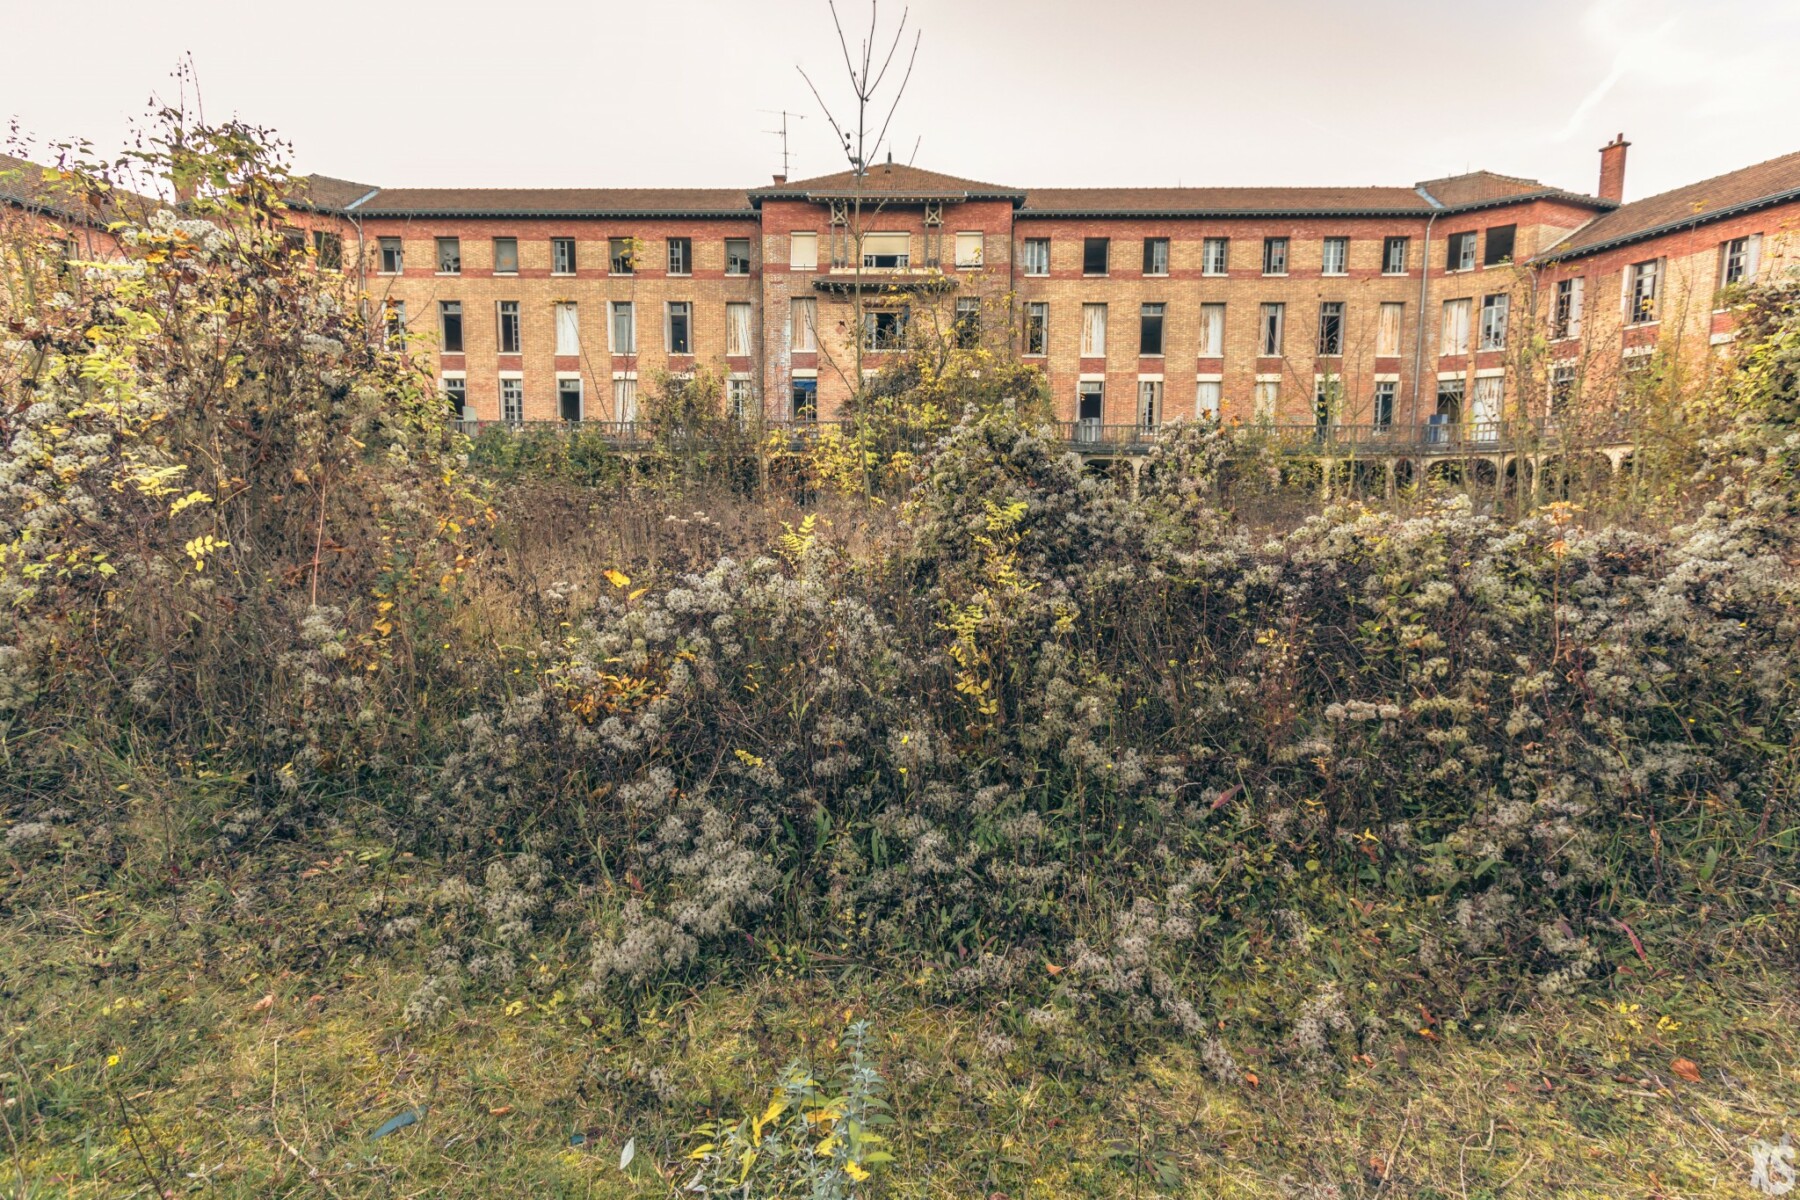 Sanatorium abandonné en France | urbexsession.com/sanatorium-nestor-pirotte | Urbex France